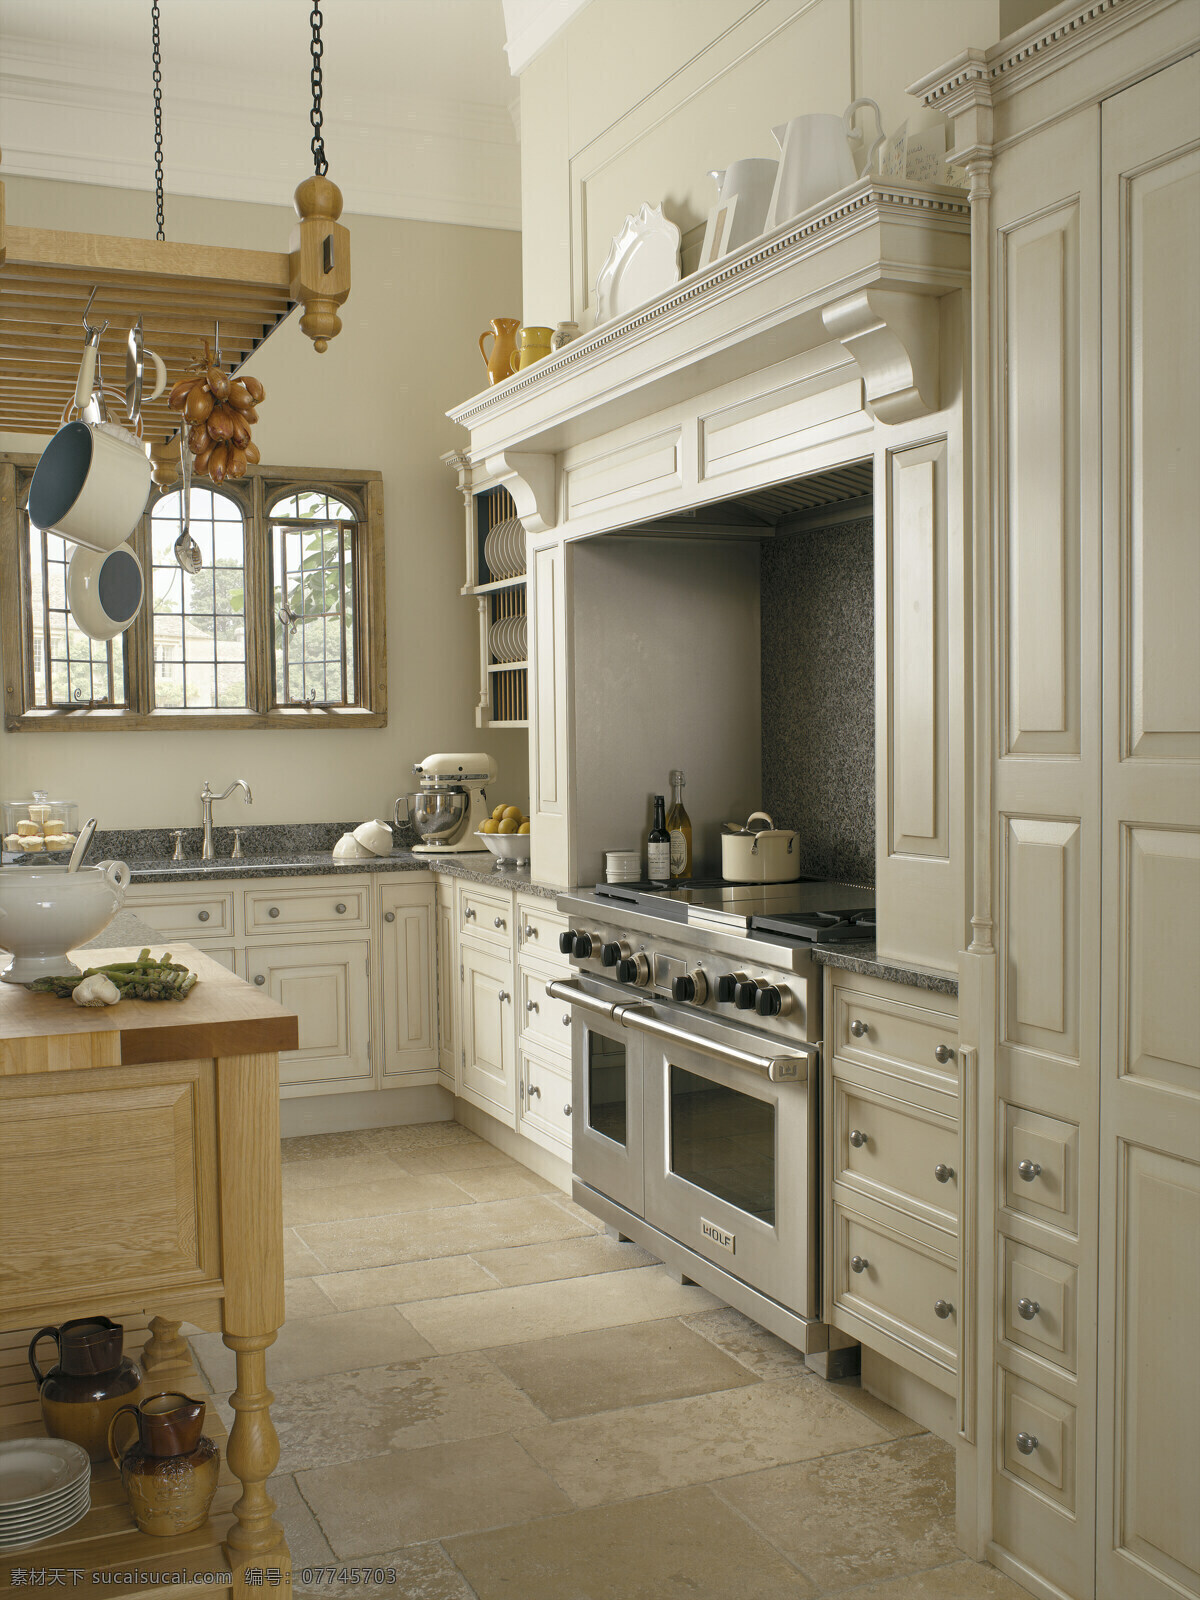 时尚 欧式 厨房 白色 橱柜 建筑园林 室内摄影 时尚欧式厨房 家居装饰素材